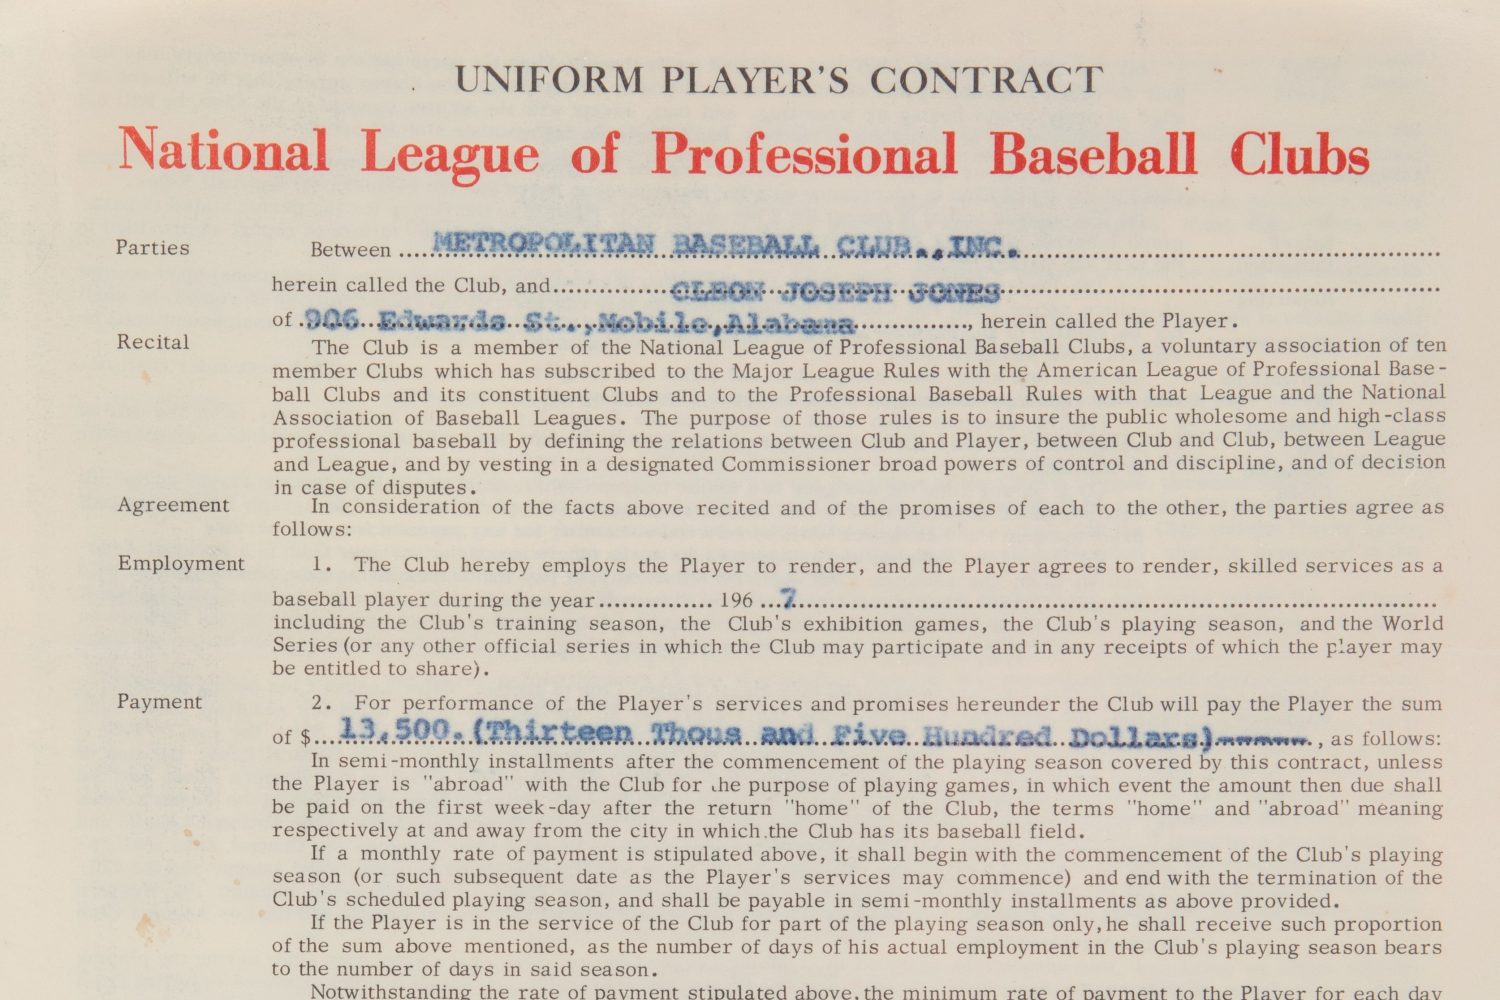 Cleon Jones 1967 Contract with New York Mets